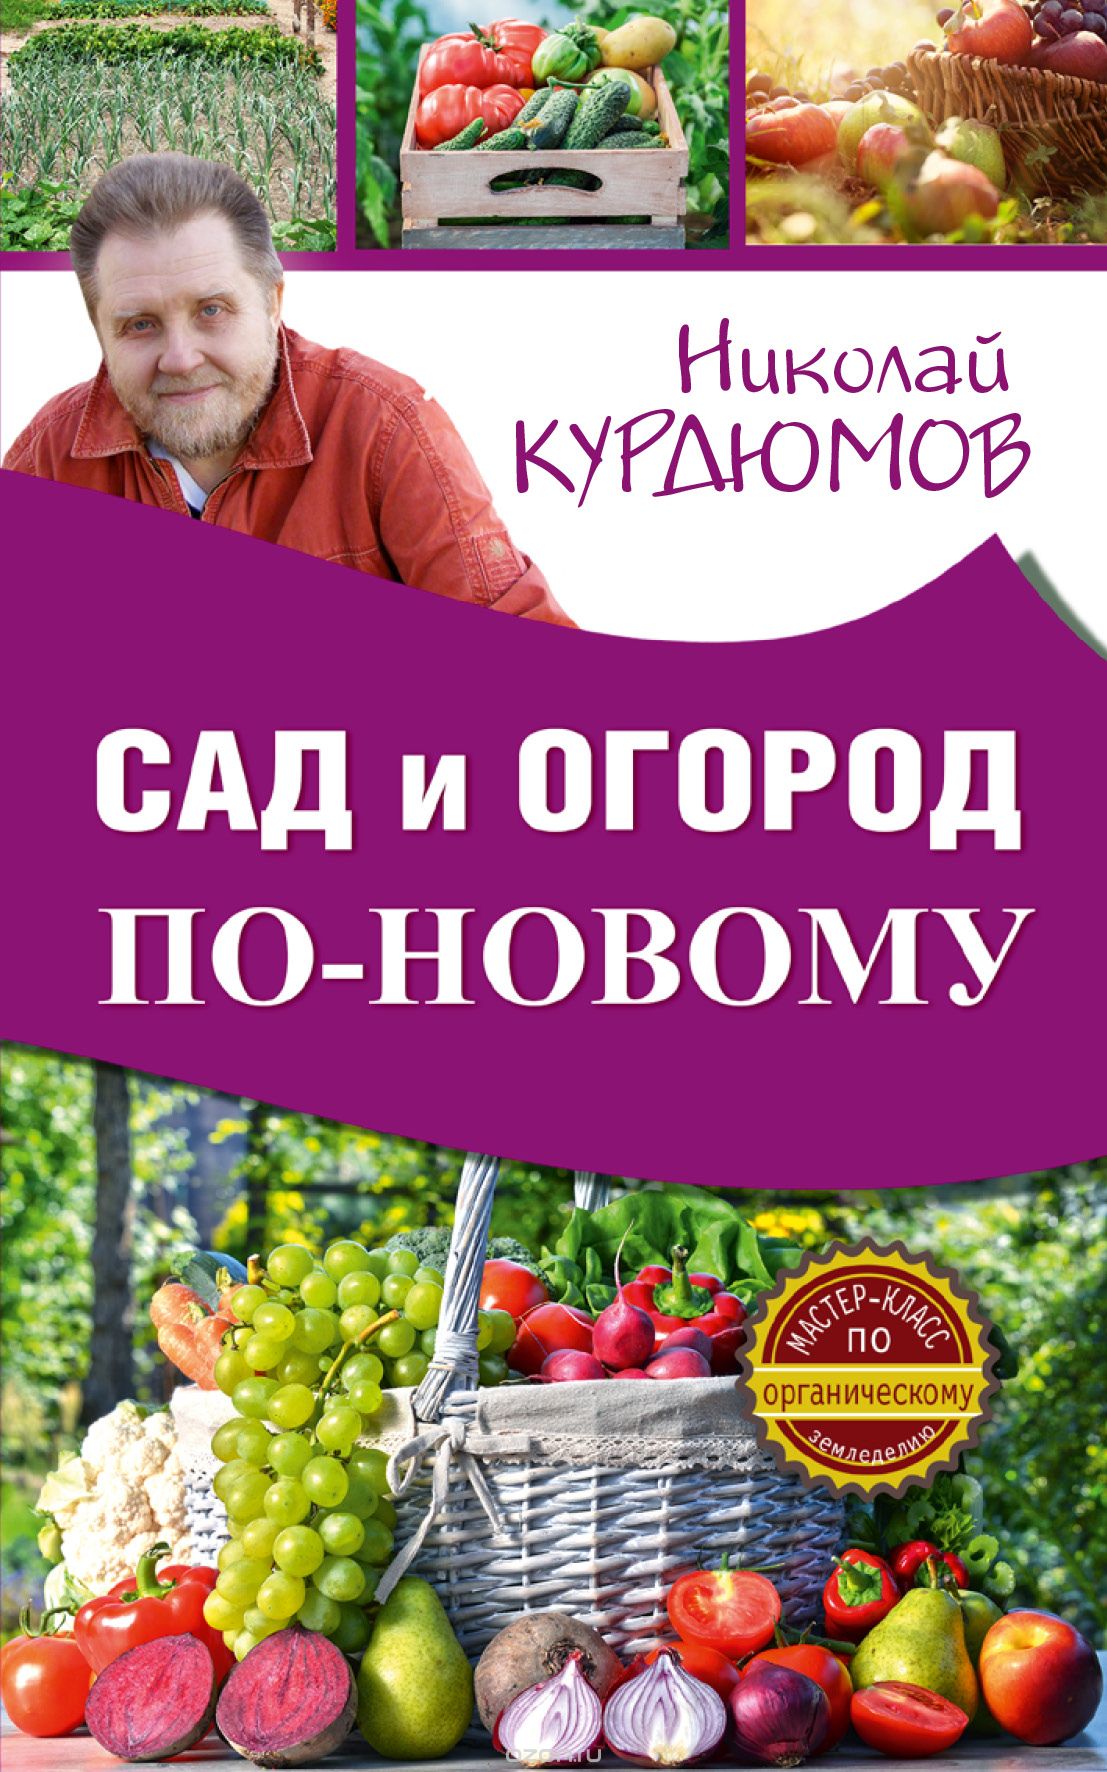 Скачать книгу "Сад и огород по-новому, Курдюмов Николай Иванович"